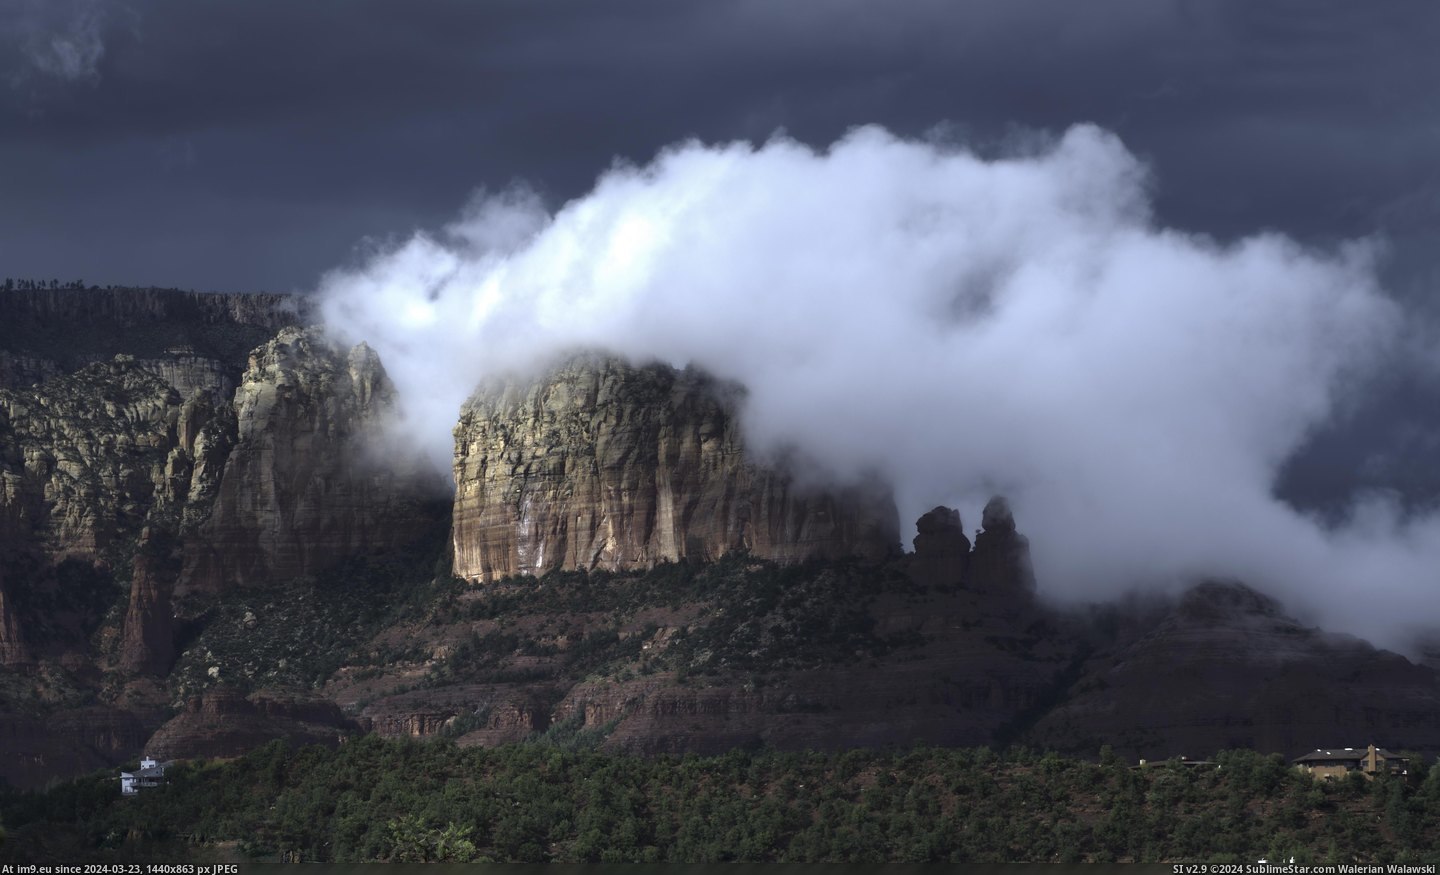 #Storm #Sedona #Breaks #Arizona [Earthporn] Sedona, Arizona as the storm breaks away. [5031 x 3028] [OC] Pic. (Image of album My r/EARTHPORN favs))